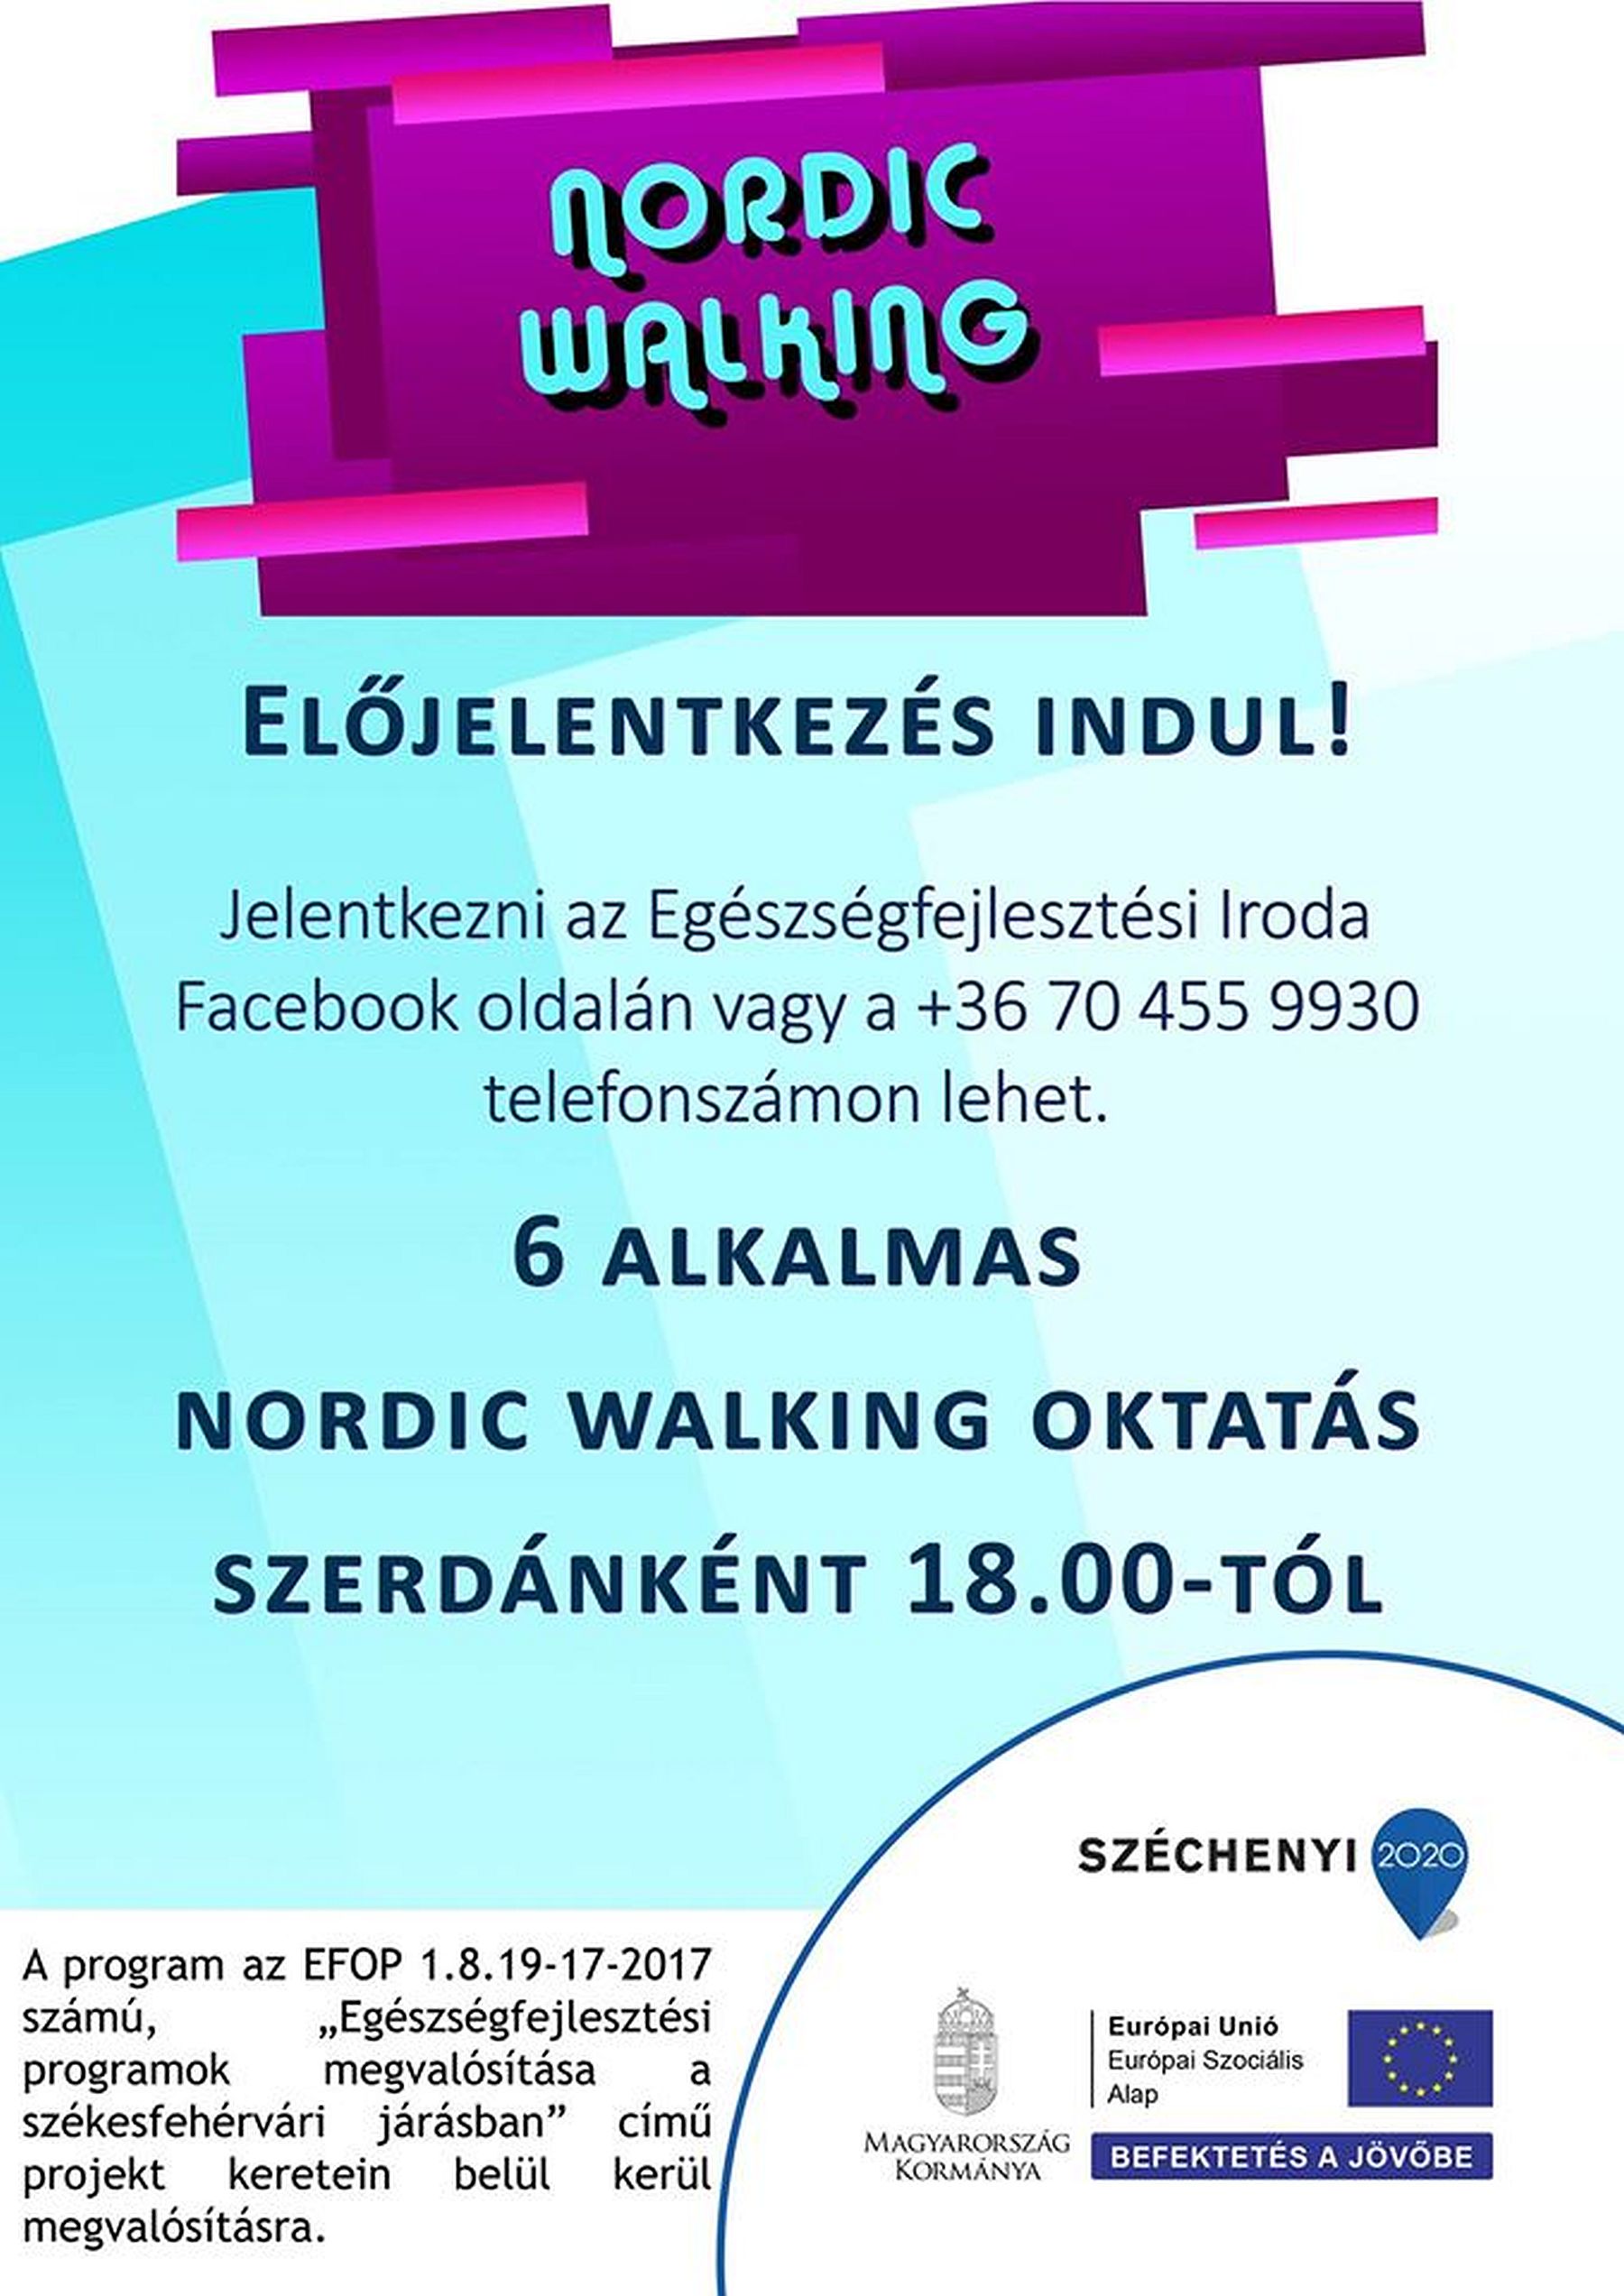 Nordic walking órák a Palotavárosi tavaknál - előjegyzést vesznek föl a foglalkozásokra